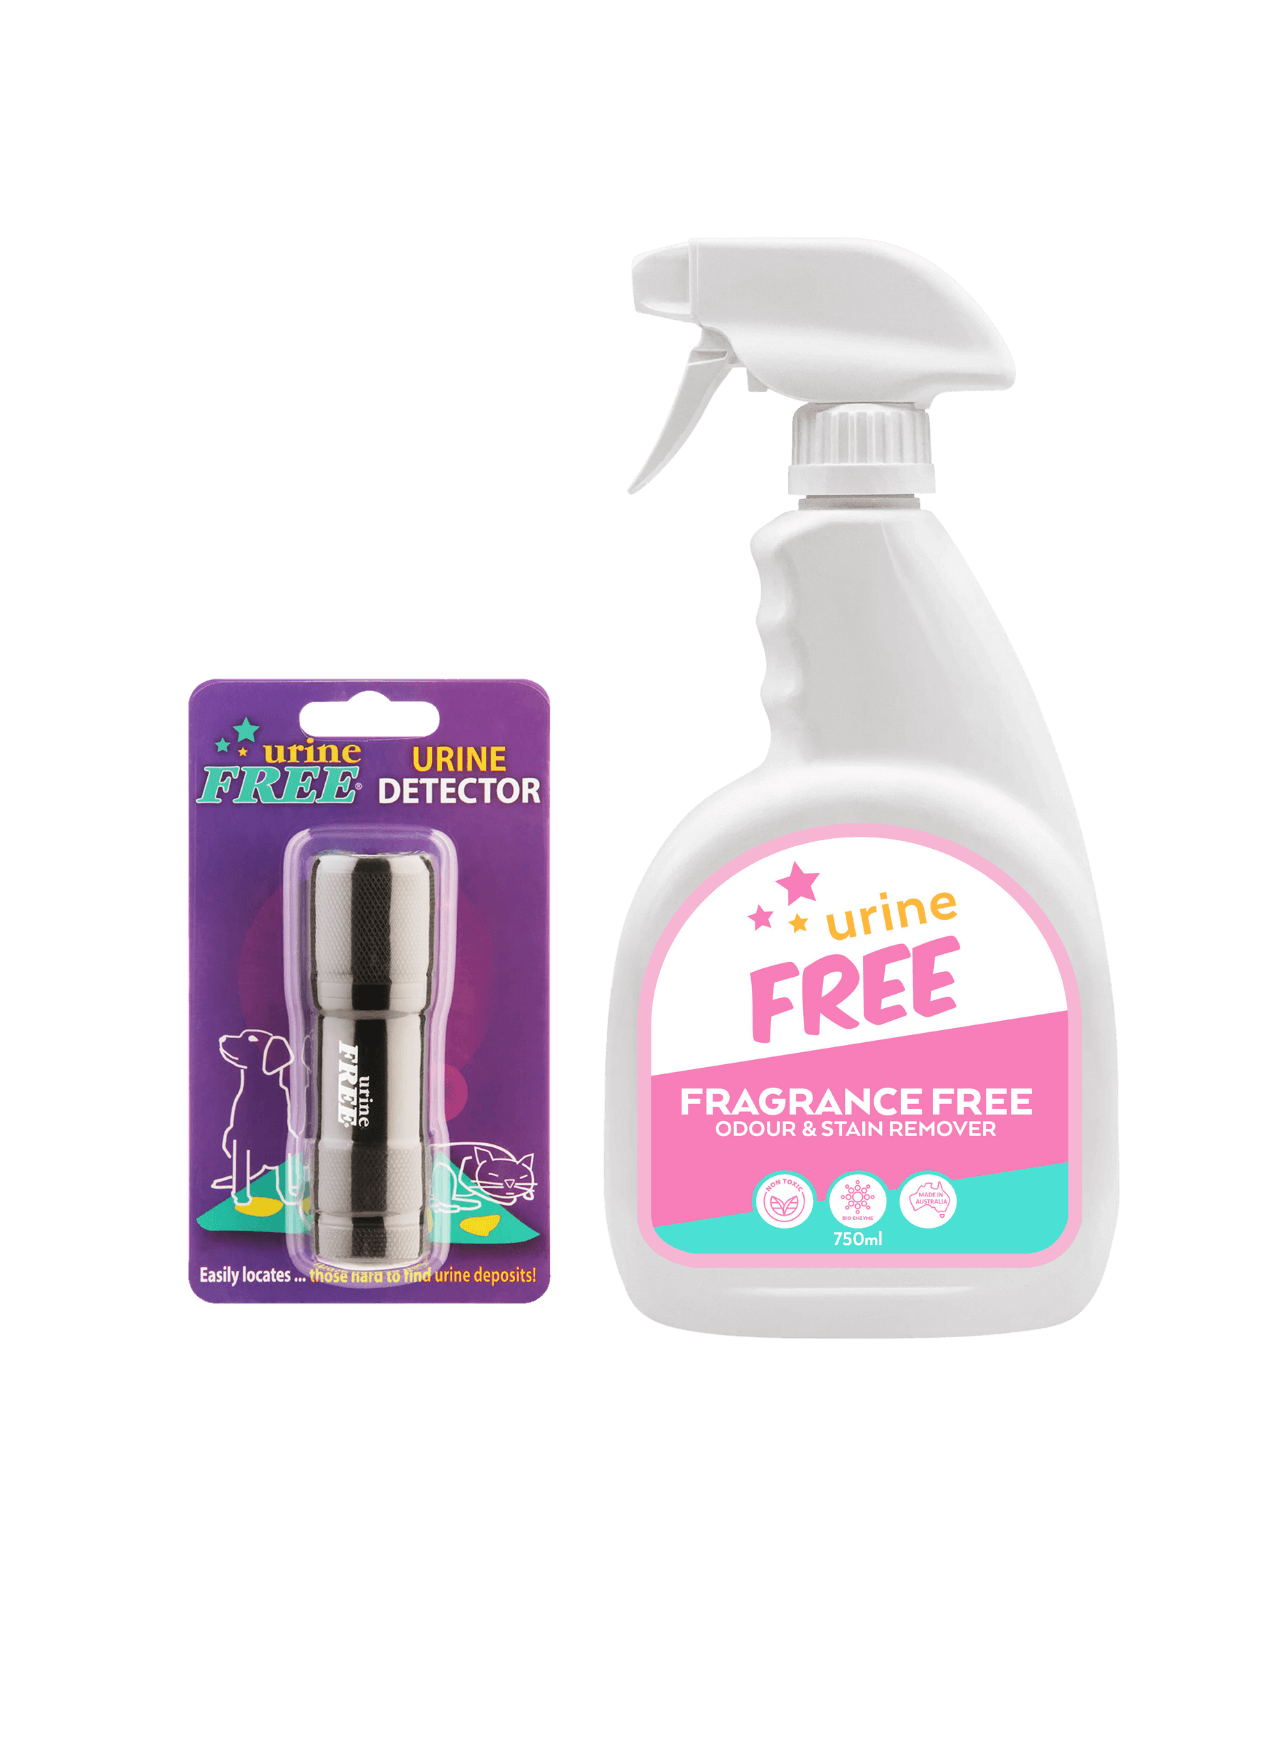 Fragrance Free Starter Pack